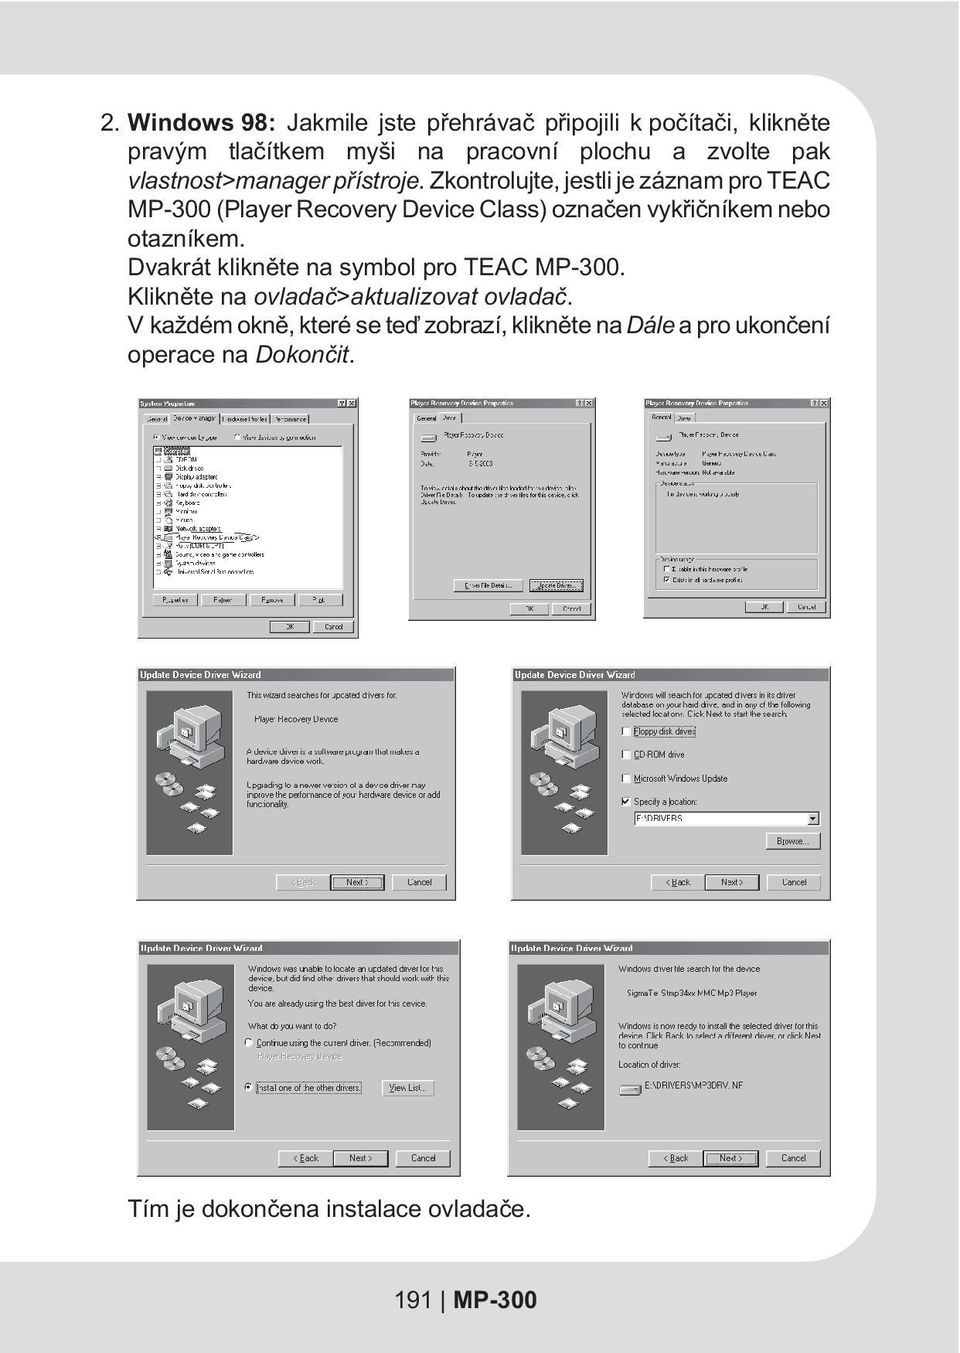 Zkontrolujte, jestli je záznam pro TEAC MP-300 (Player Recovery Device Class) oznaèen vykøièníkem nebo otazníkem.